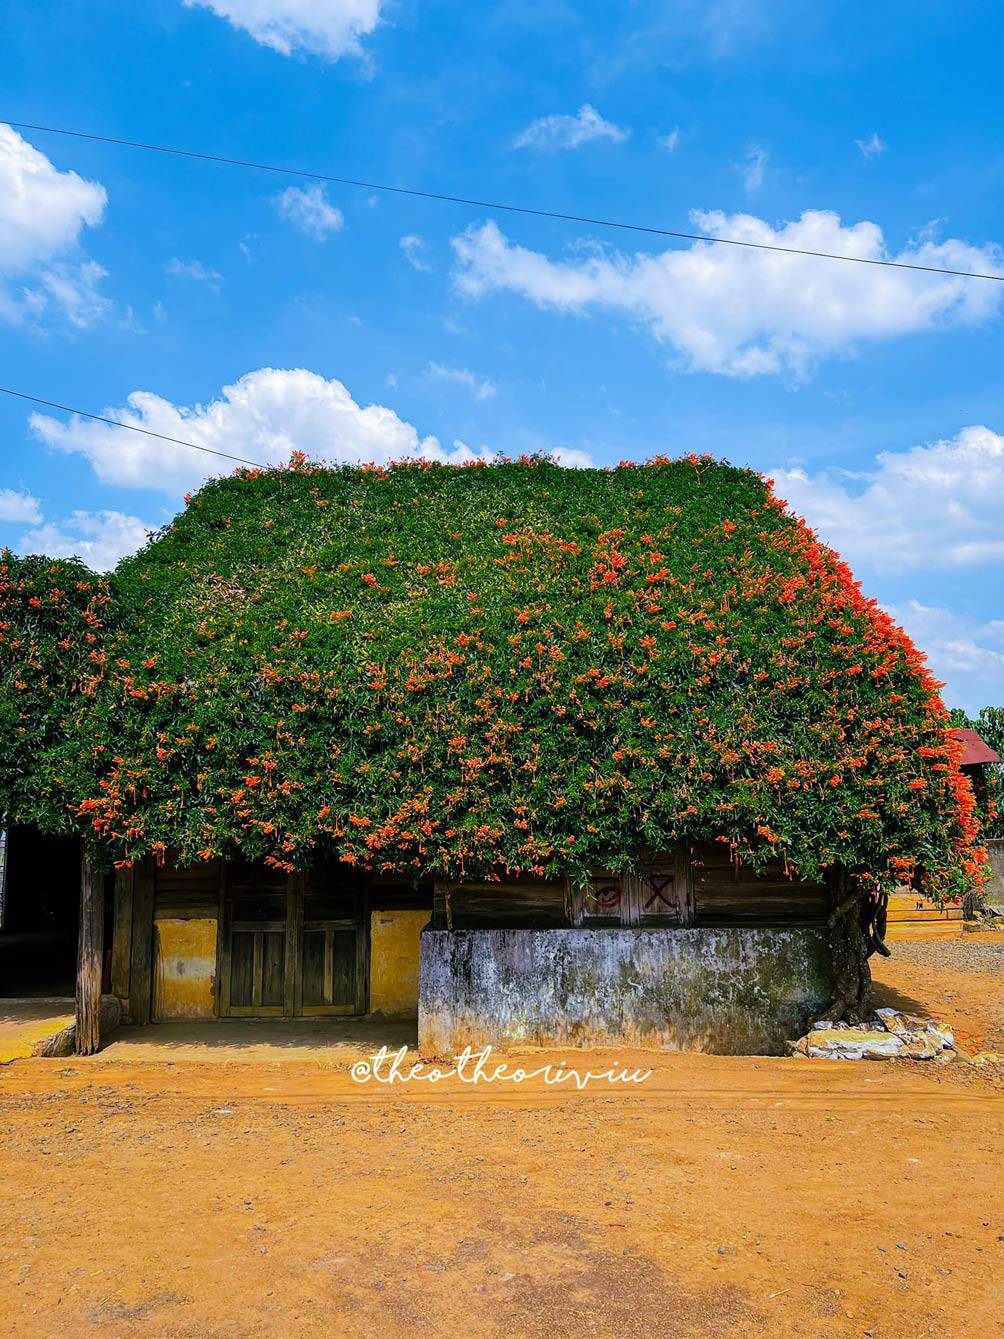 Ngôi nhà hoa xác pháo đẹp như cổ tích ở Lâm Đồng - 5